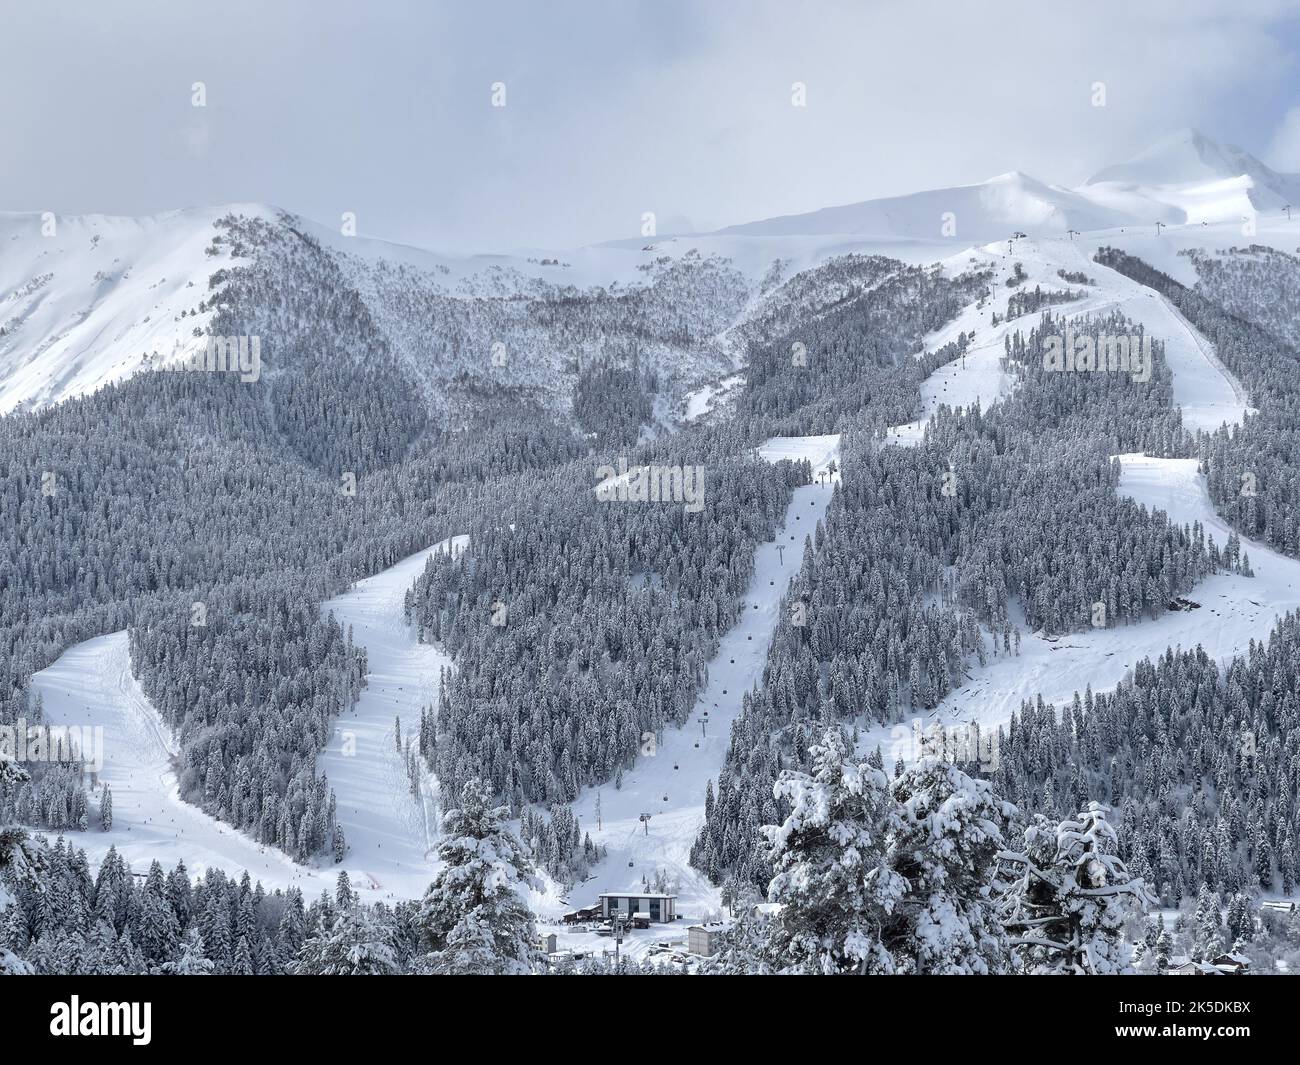 View of the ski slopes on the mountain. Stock Photo